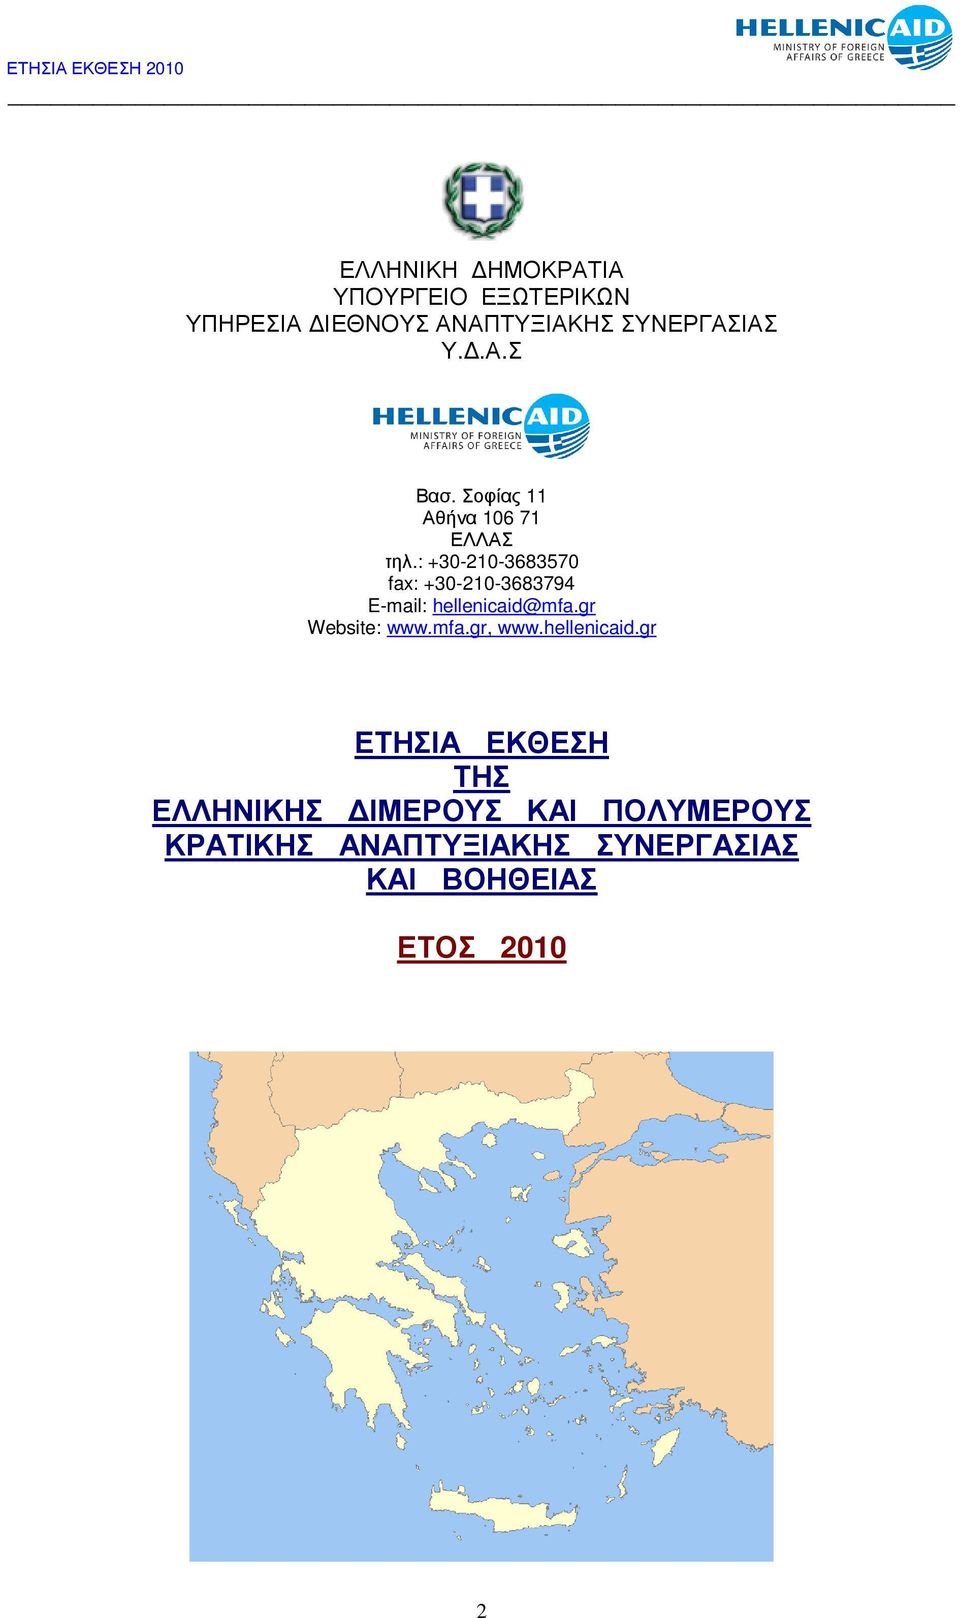 : +30-210-3683570 fax: +30-210-3683794 E-mail: hellenicaid@mfa.gr Website: www.mfa.gr, www.